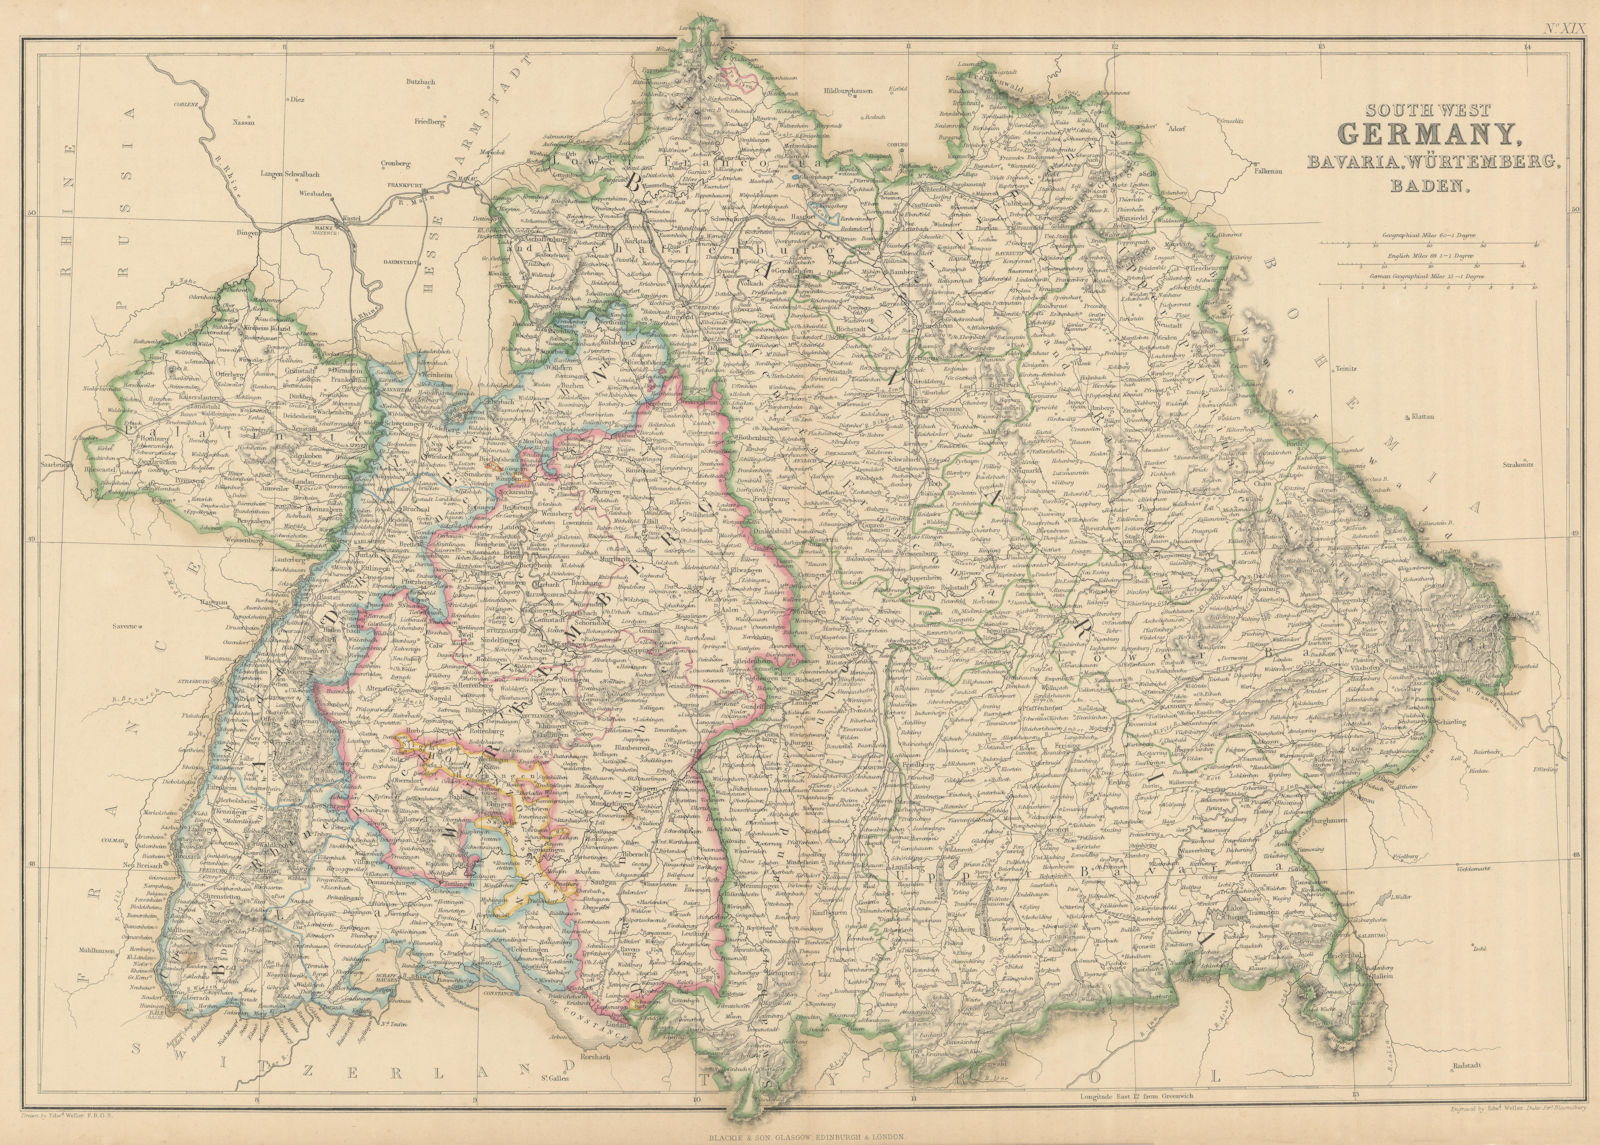 South-West Germany, Bavaria, Würtemberg & Baden. Bayern. WELLER 1860 old map